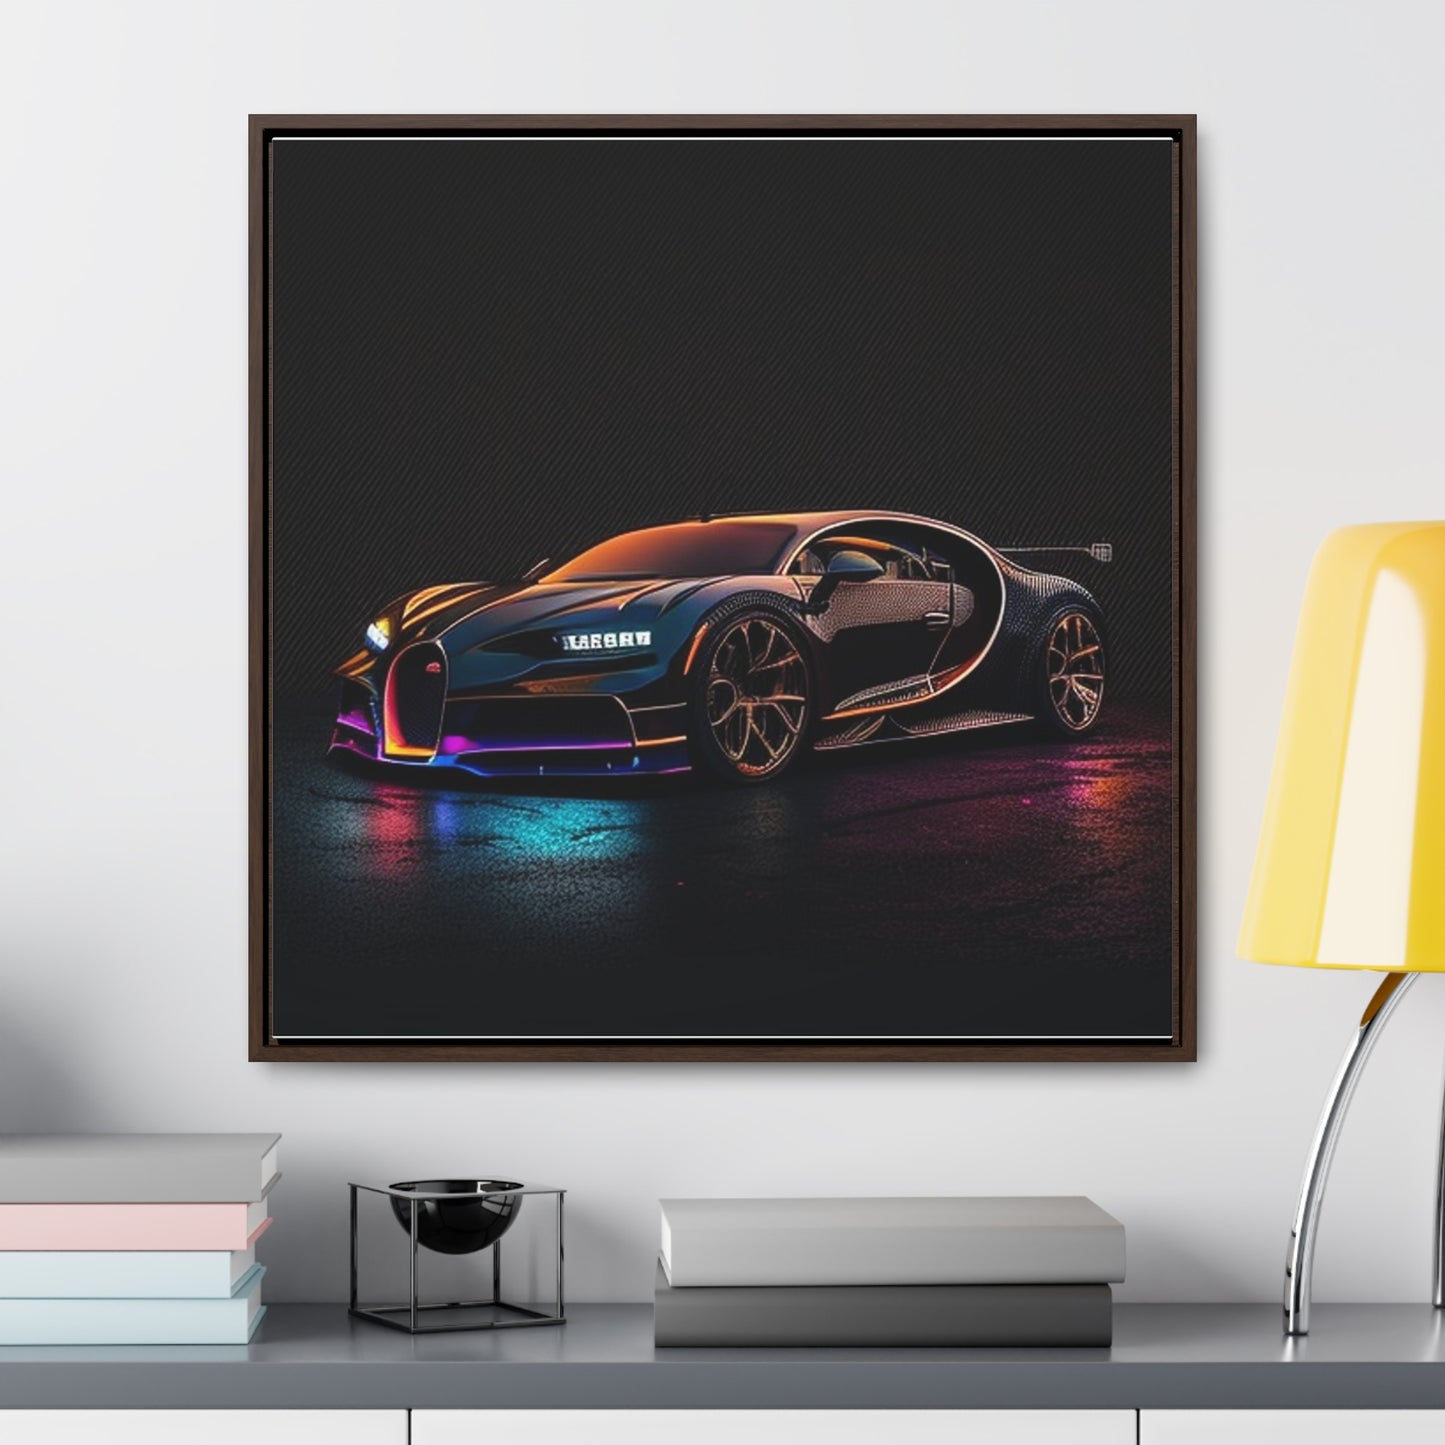 Gallery Canvas Wraps, Square Frame Bugatti Chiron Super 4